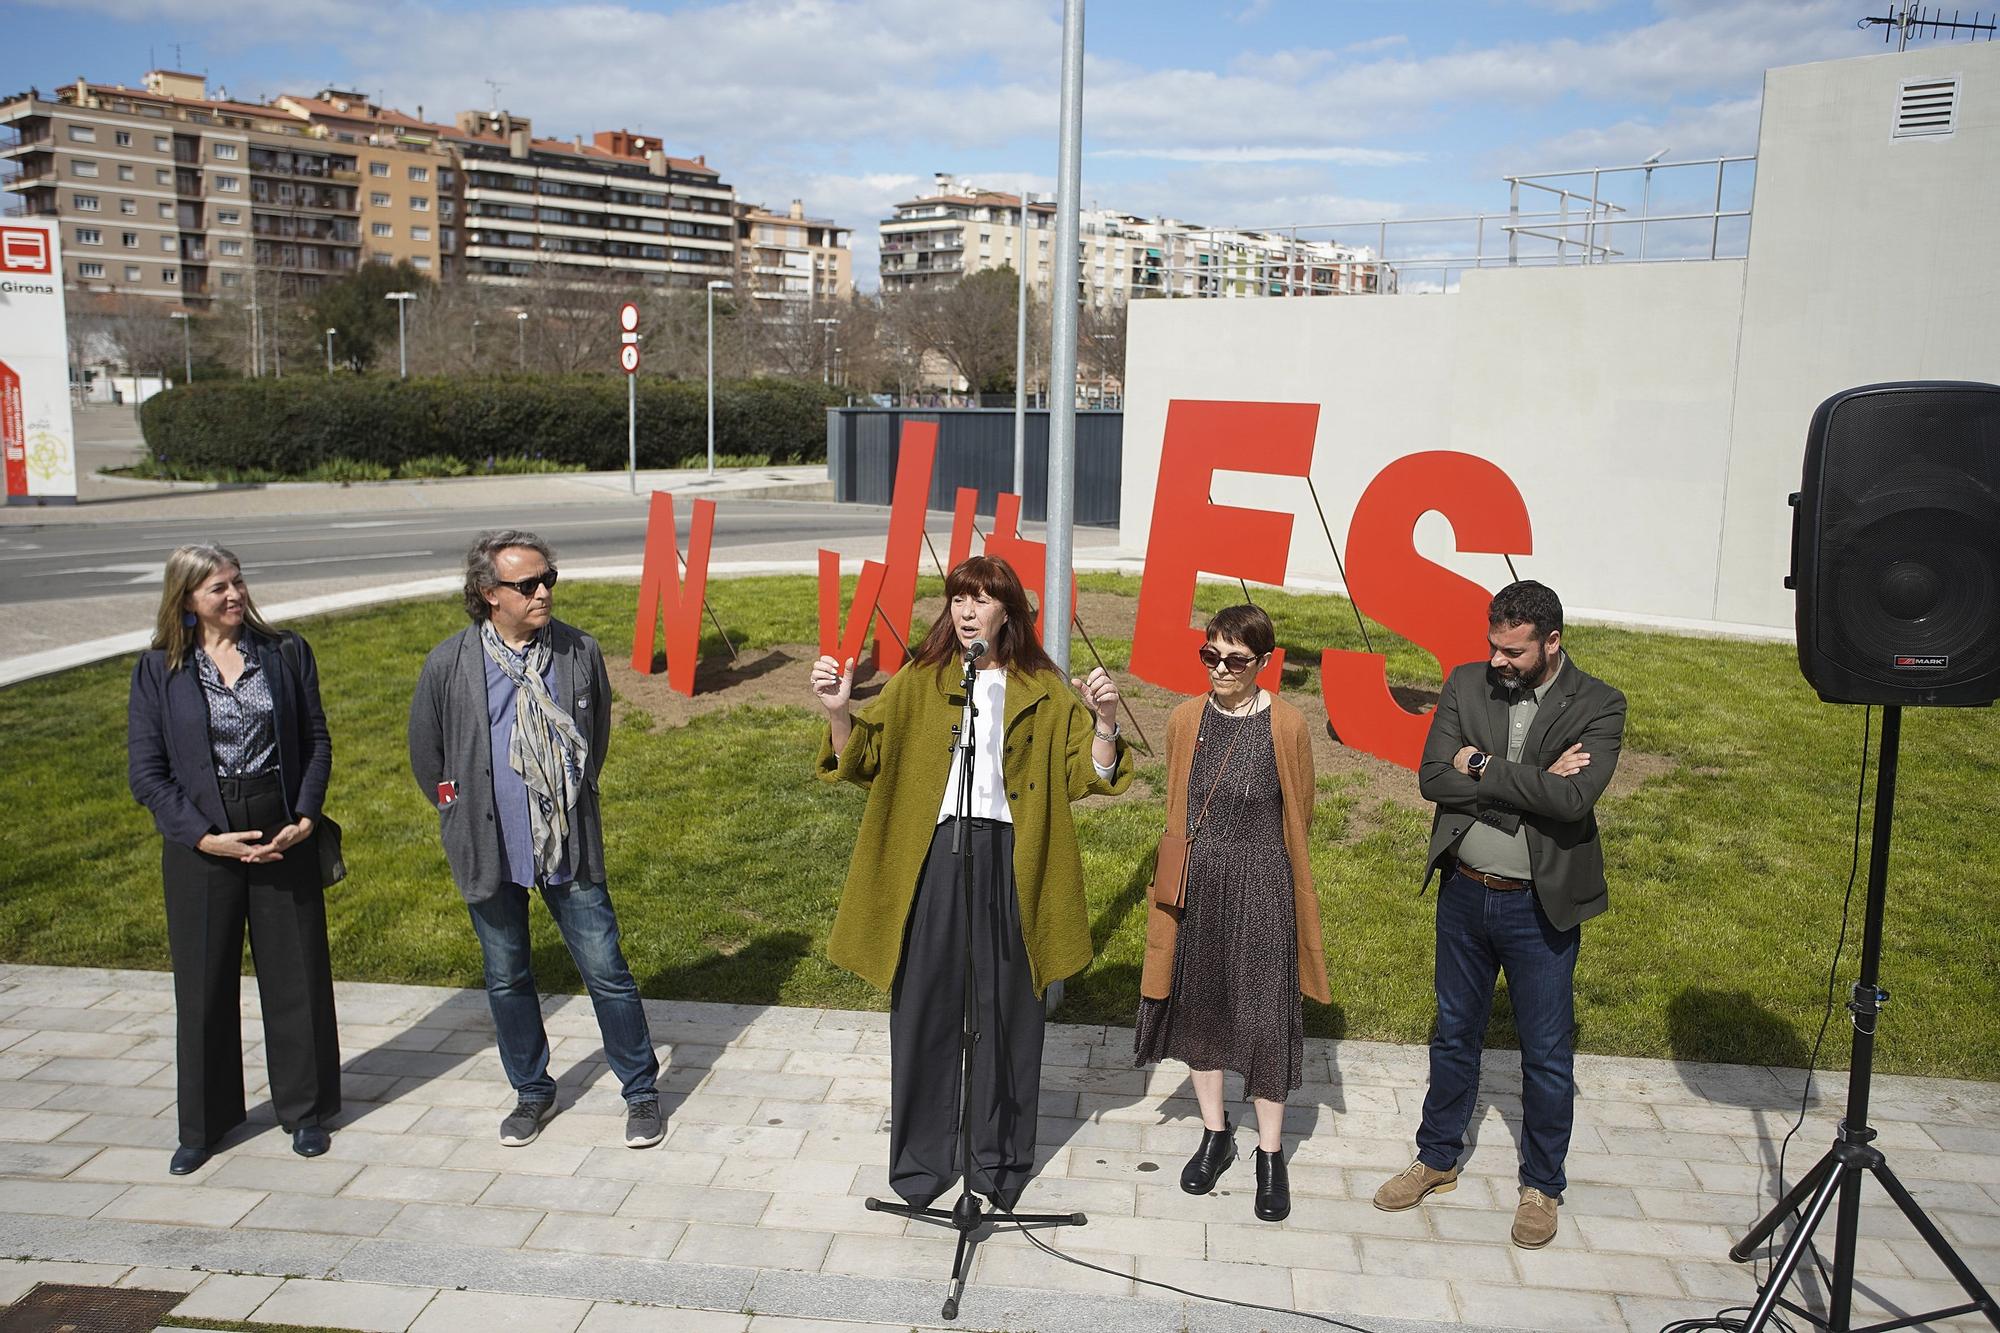 Inauguració de l'escultura "Univers" de Francesc Torres Monsó al parc Central